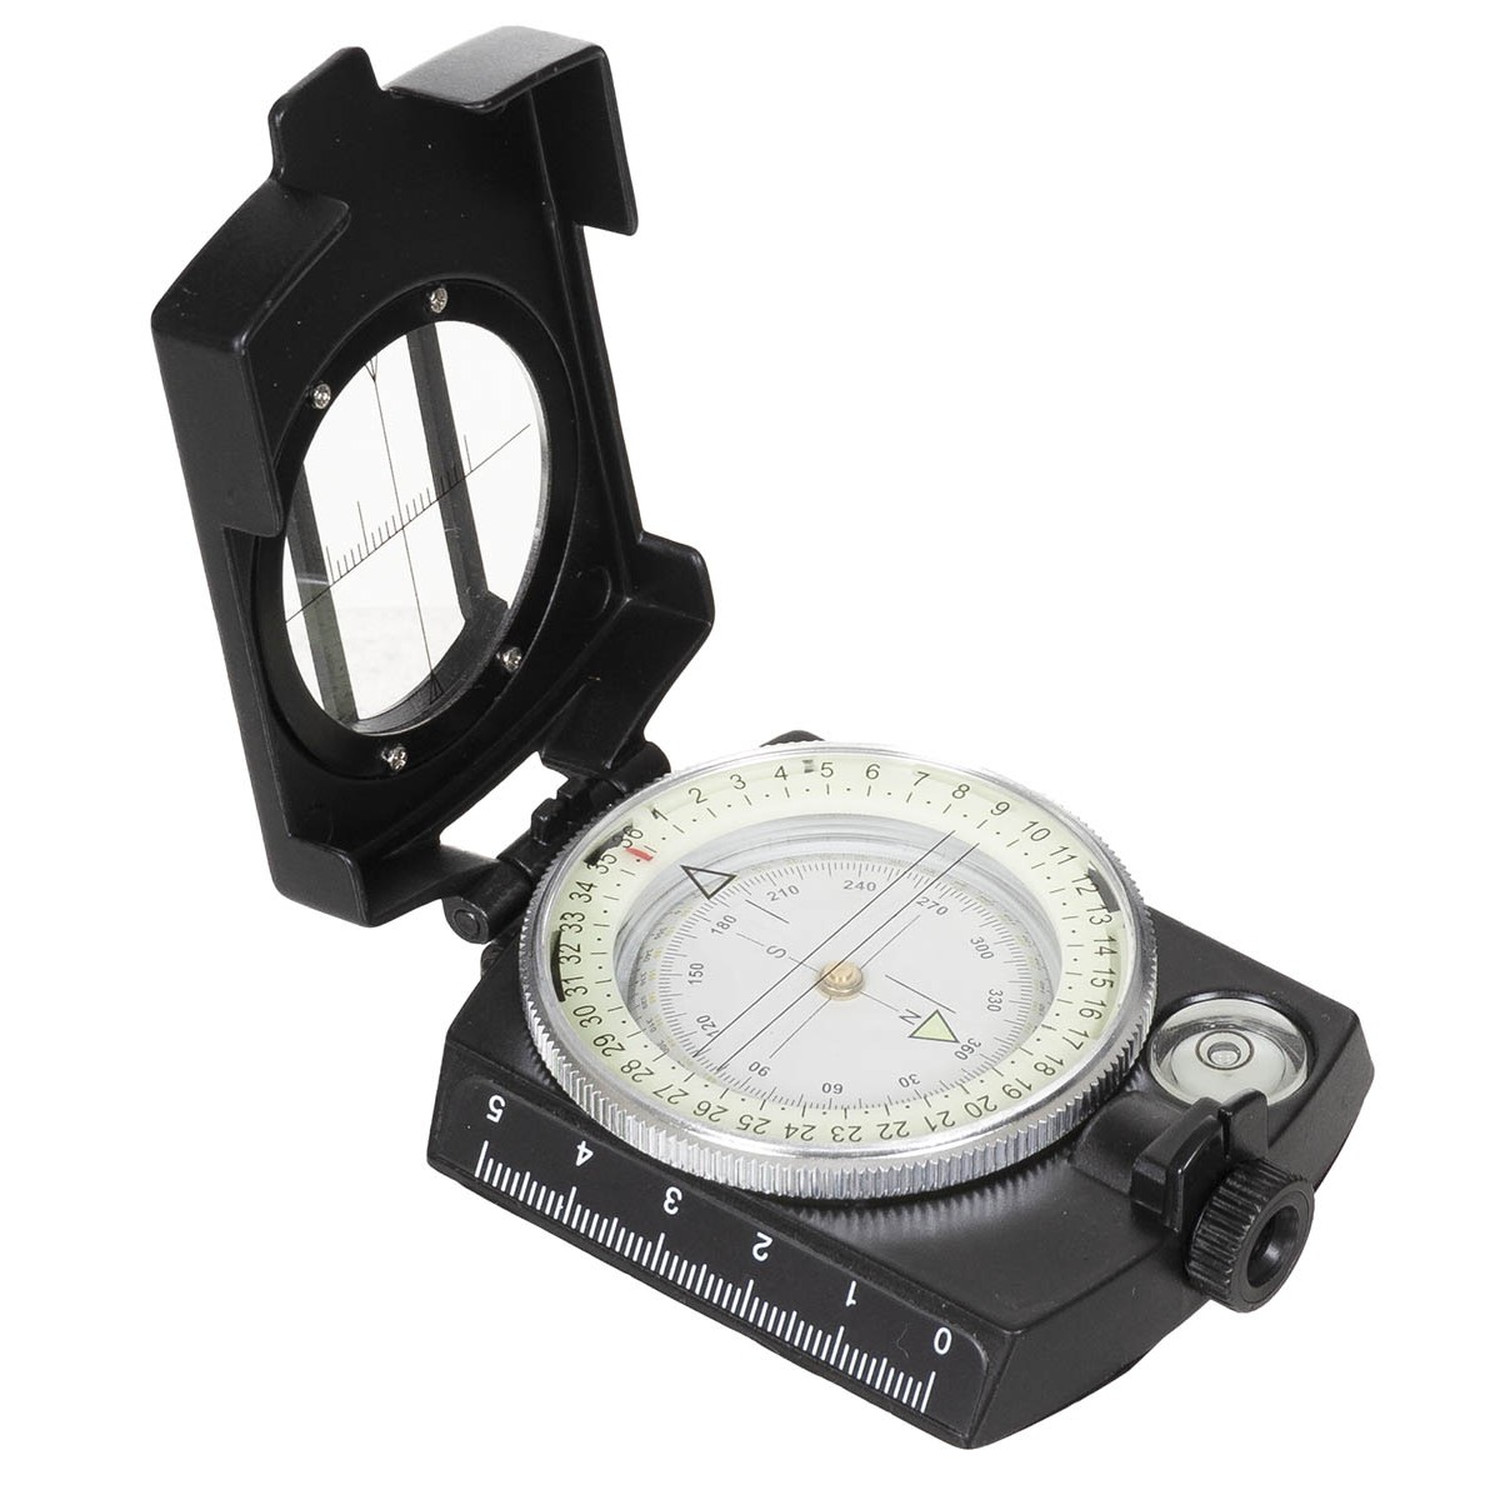 Kompass mit Metallgehäuse, flüssigkeitsgedämpft, inkl. Gürteltasche